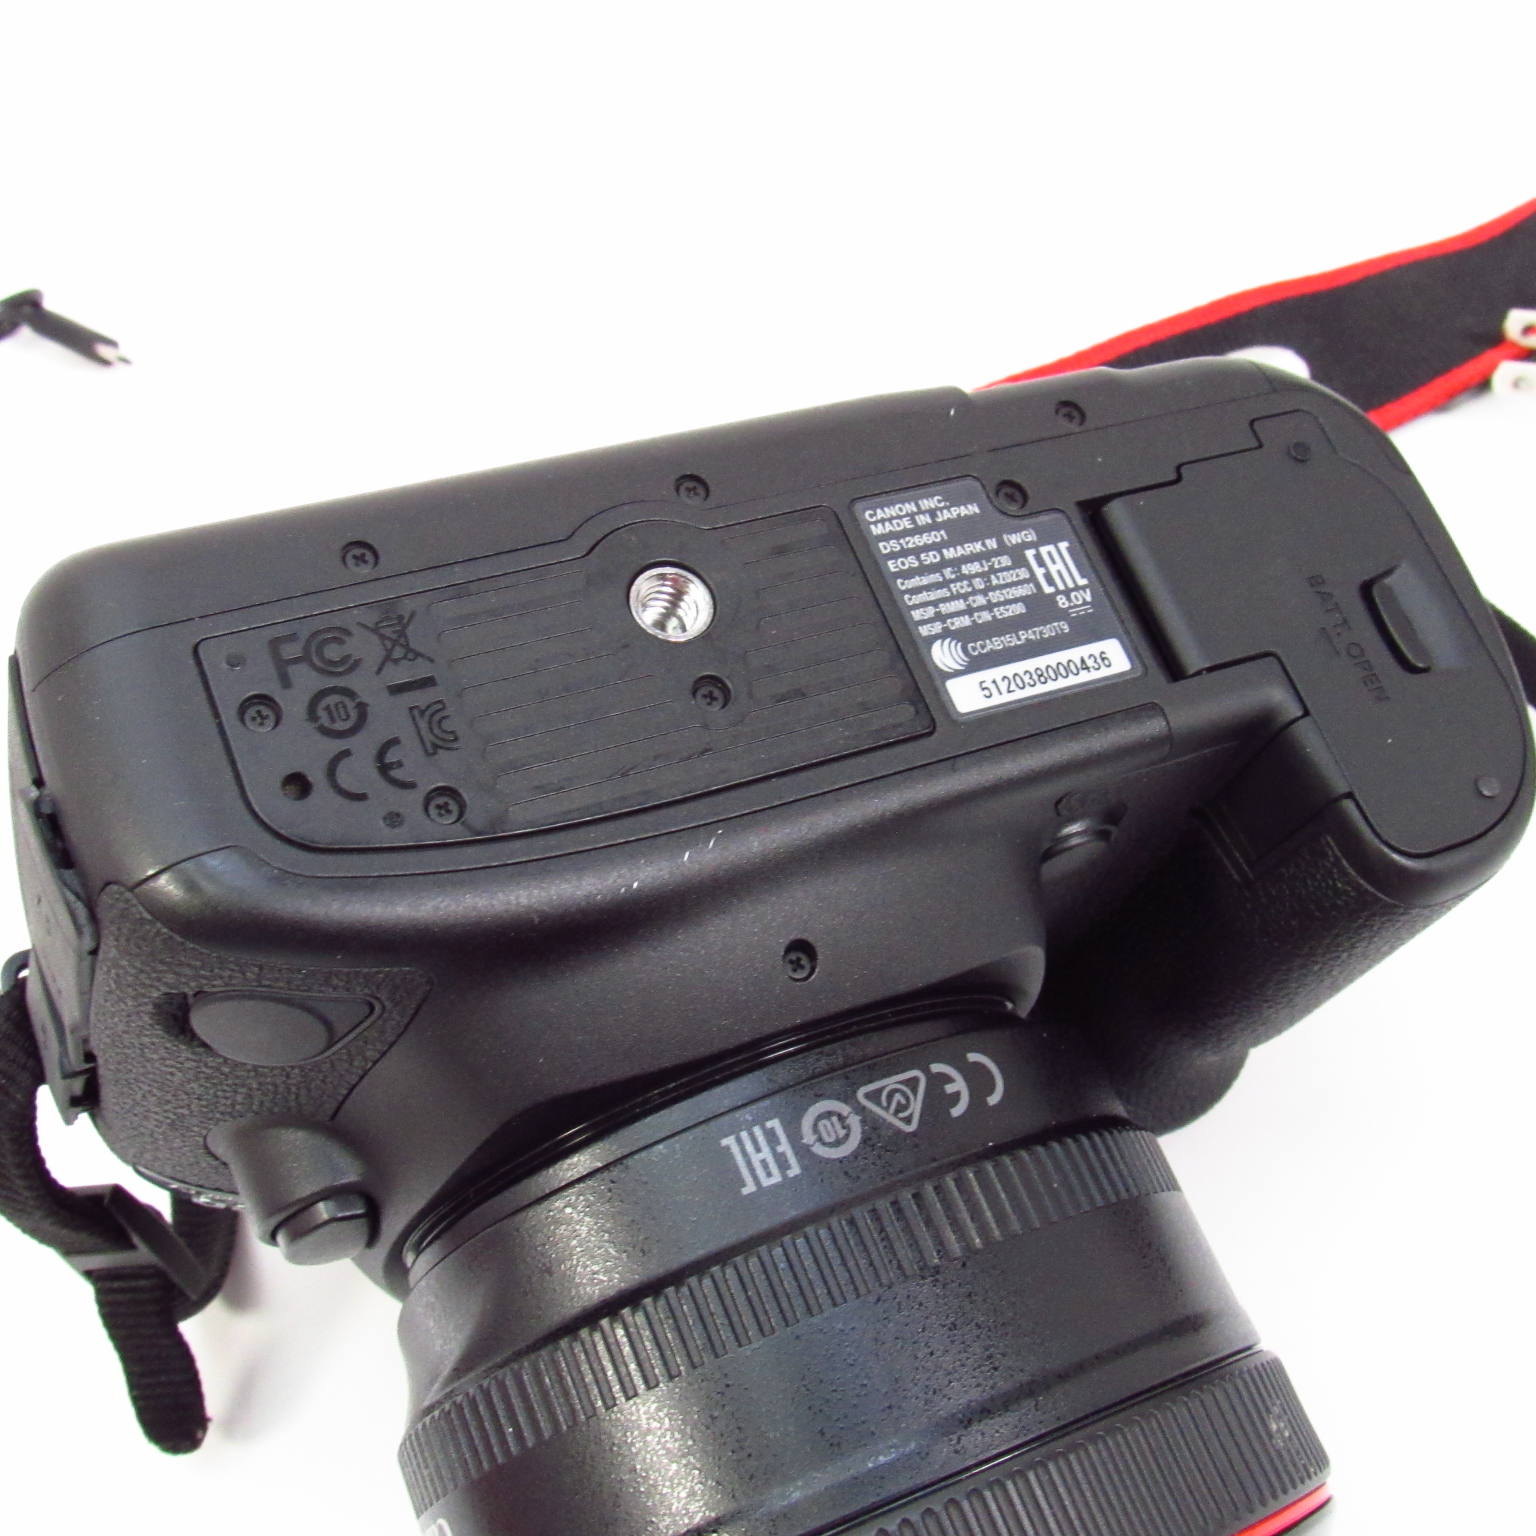 Canon EOS 5D Mark IV DS126601 30.4MP Full-Frame Digital SLR Camera 50mm Lens Kit